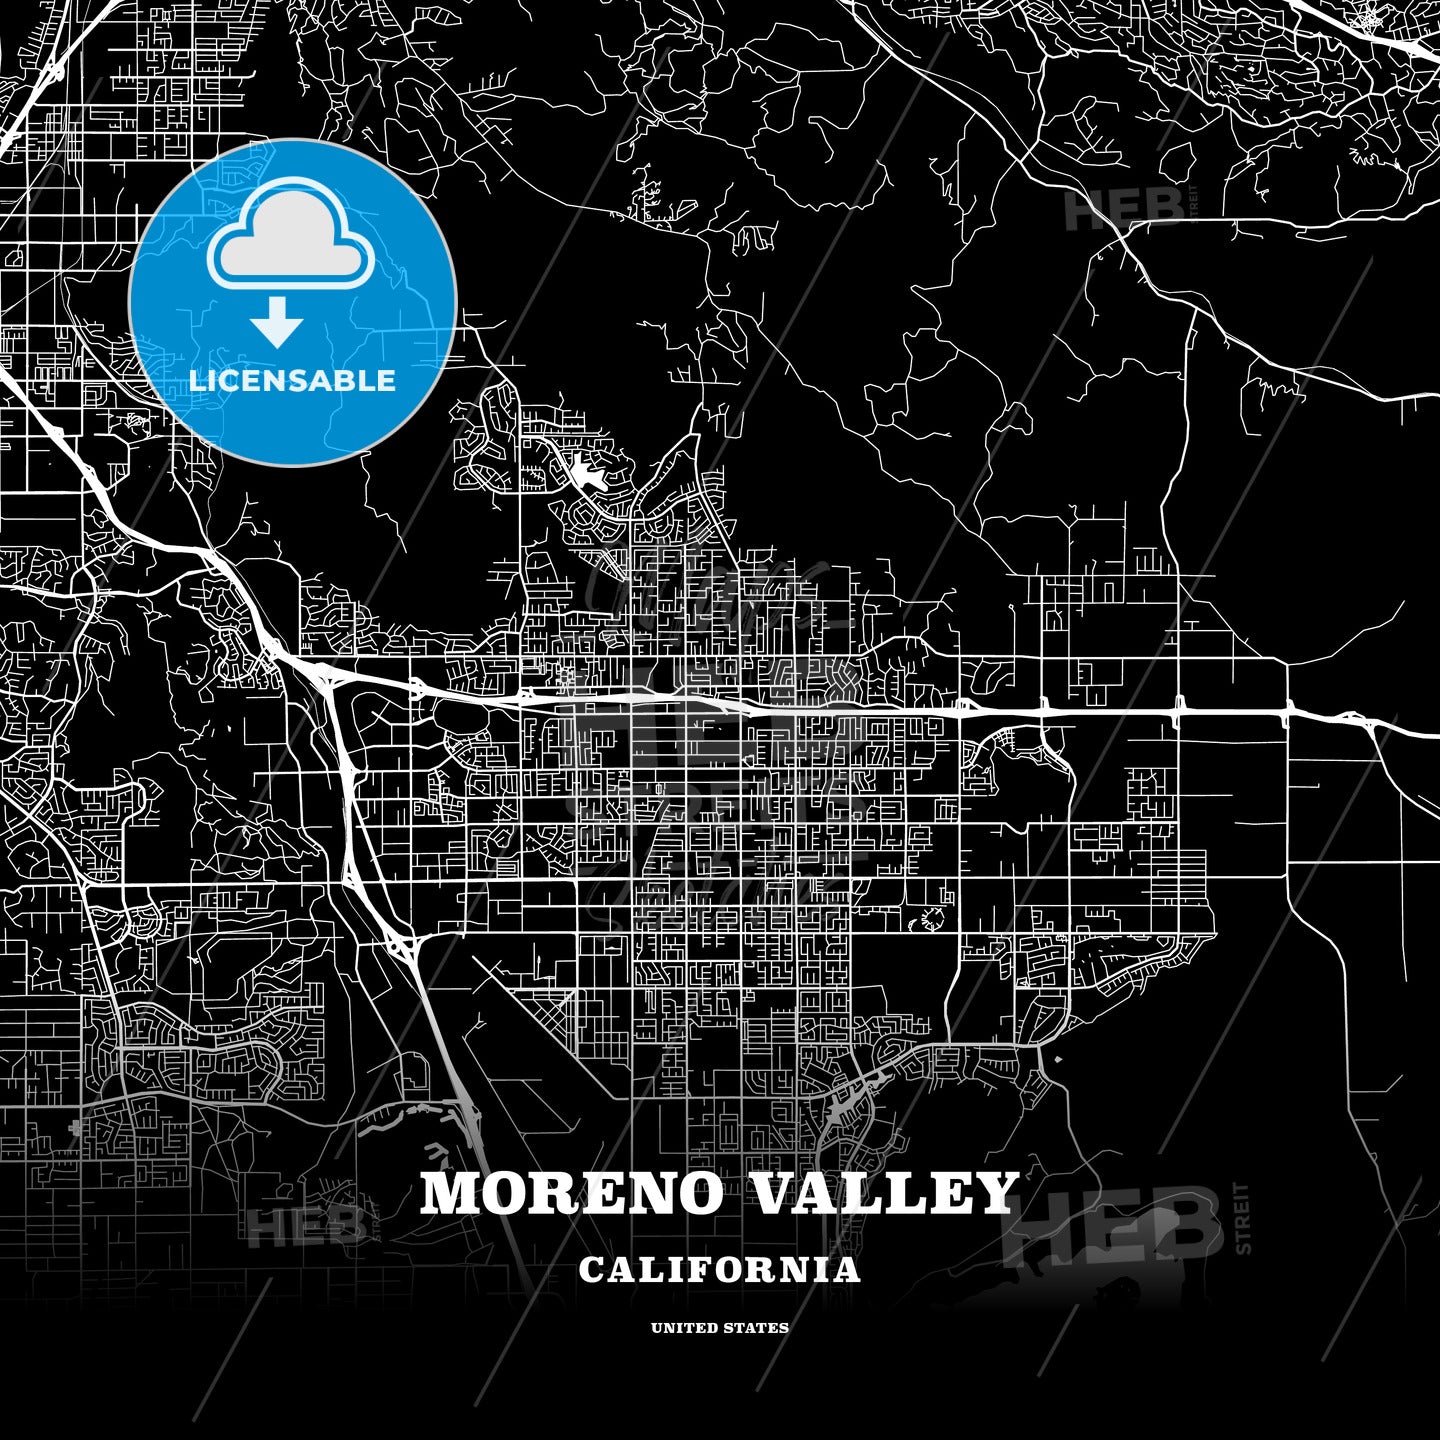 Moreno Valley, California, USA map